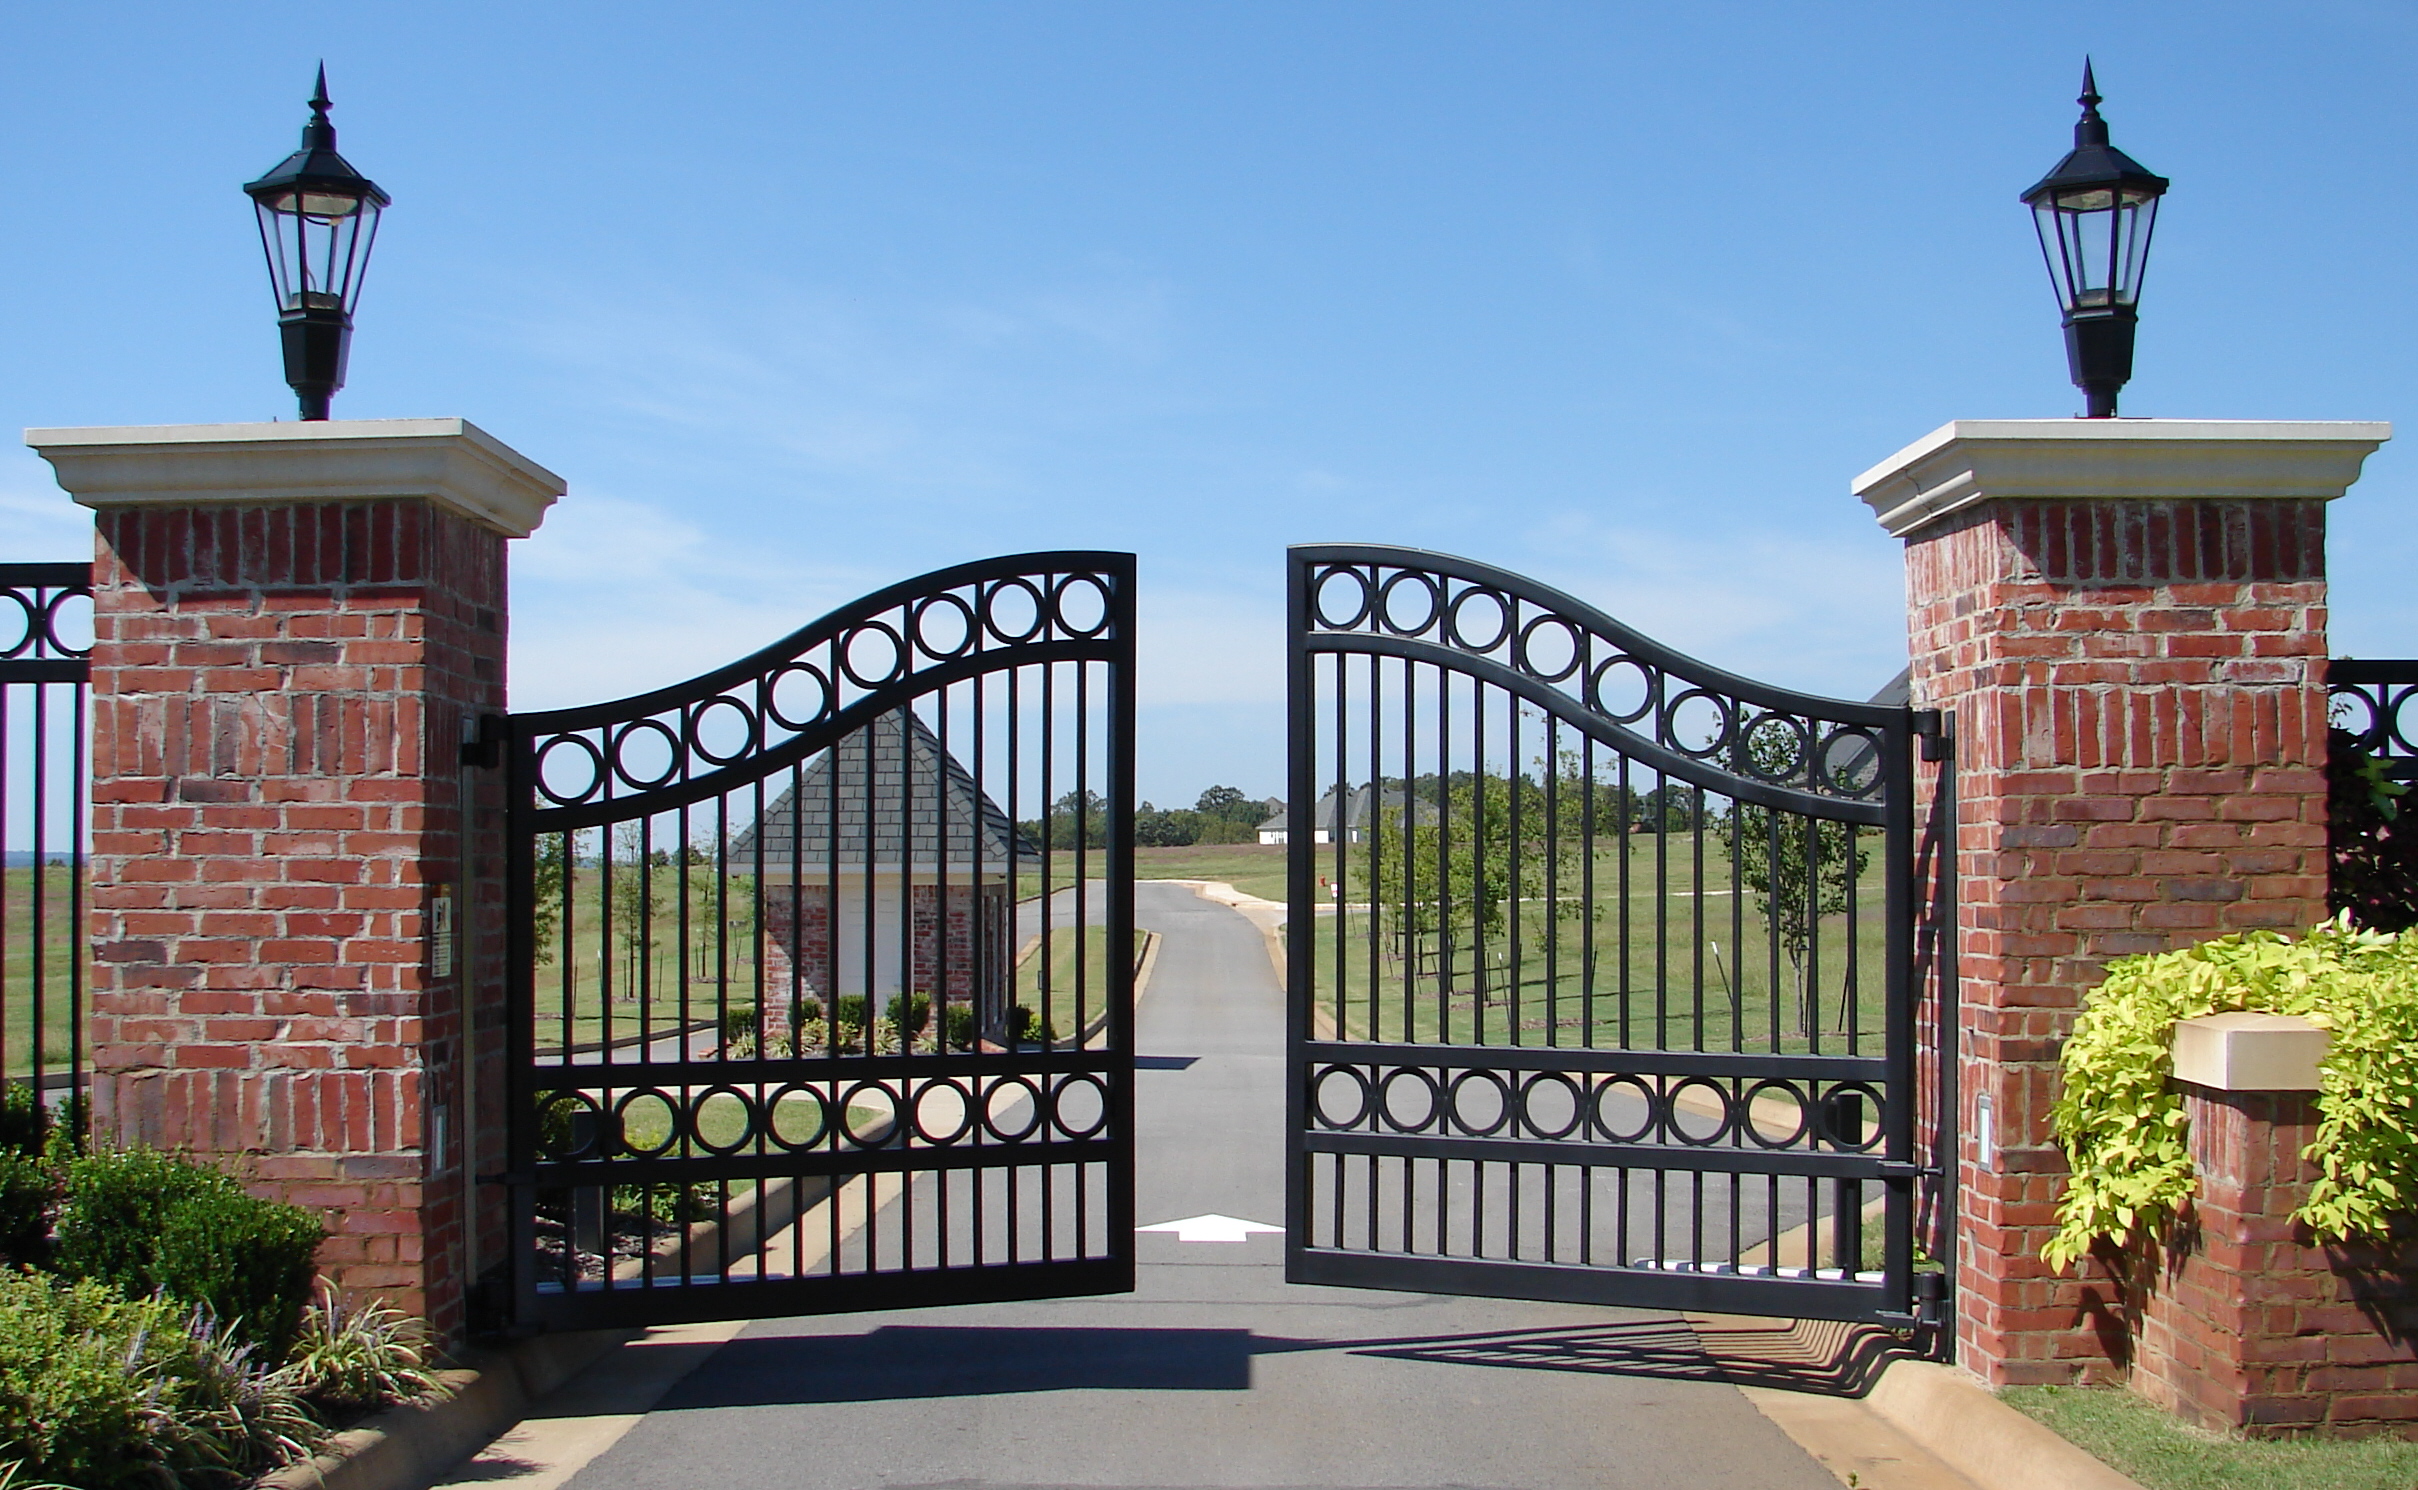 A gate sigma ru. Входные ворота. Открытые ворота. Открывающиеся ворота. Красивый металлический забор.